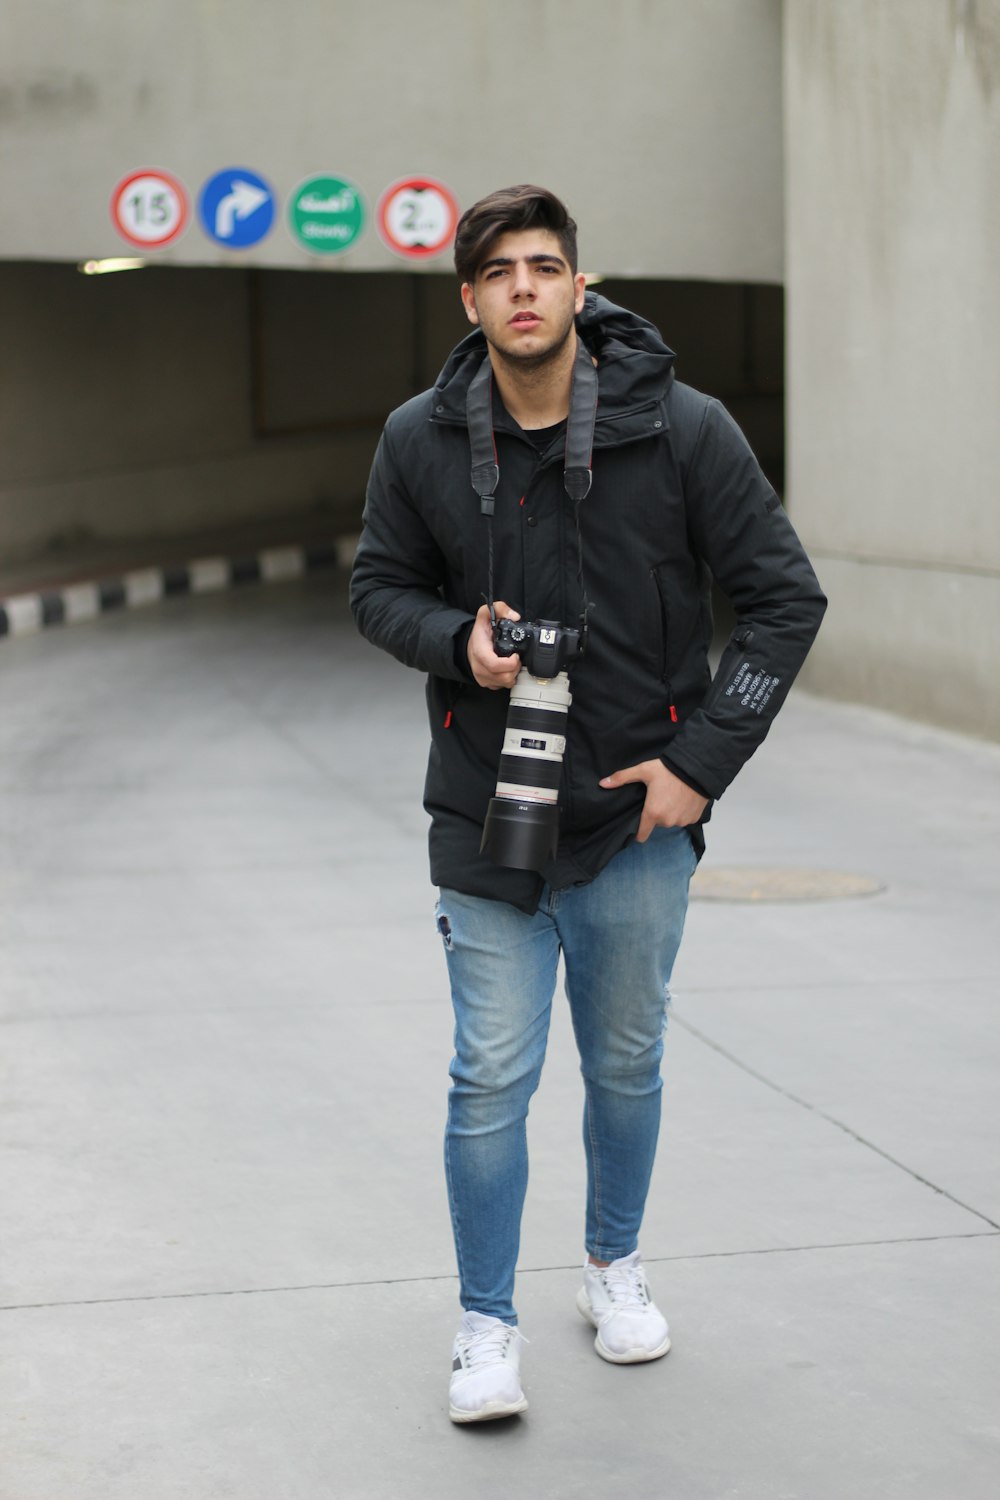 Un hombre con una chaqueta negra sostiene una cámara